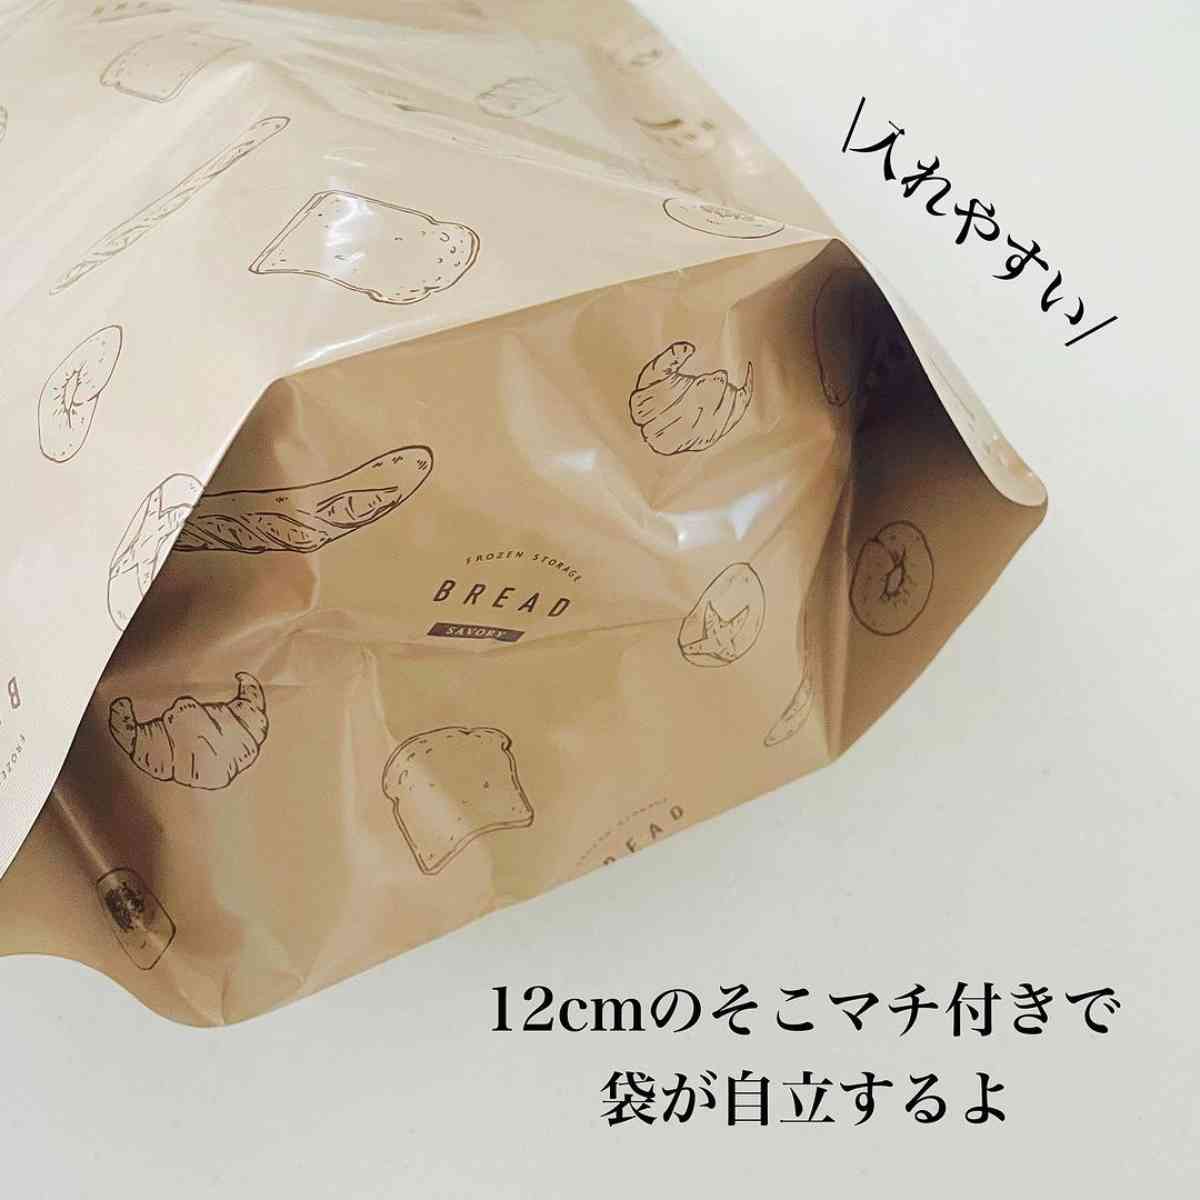 ダイソーの「パン冷凍保存袋」のマチ